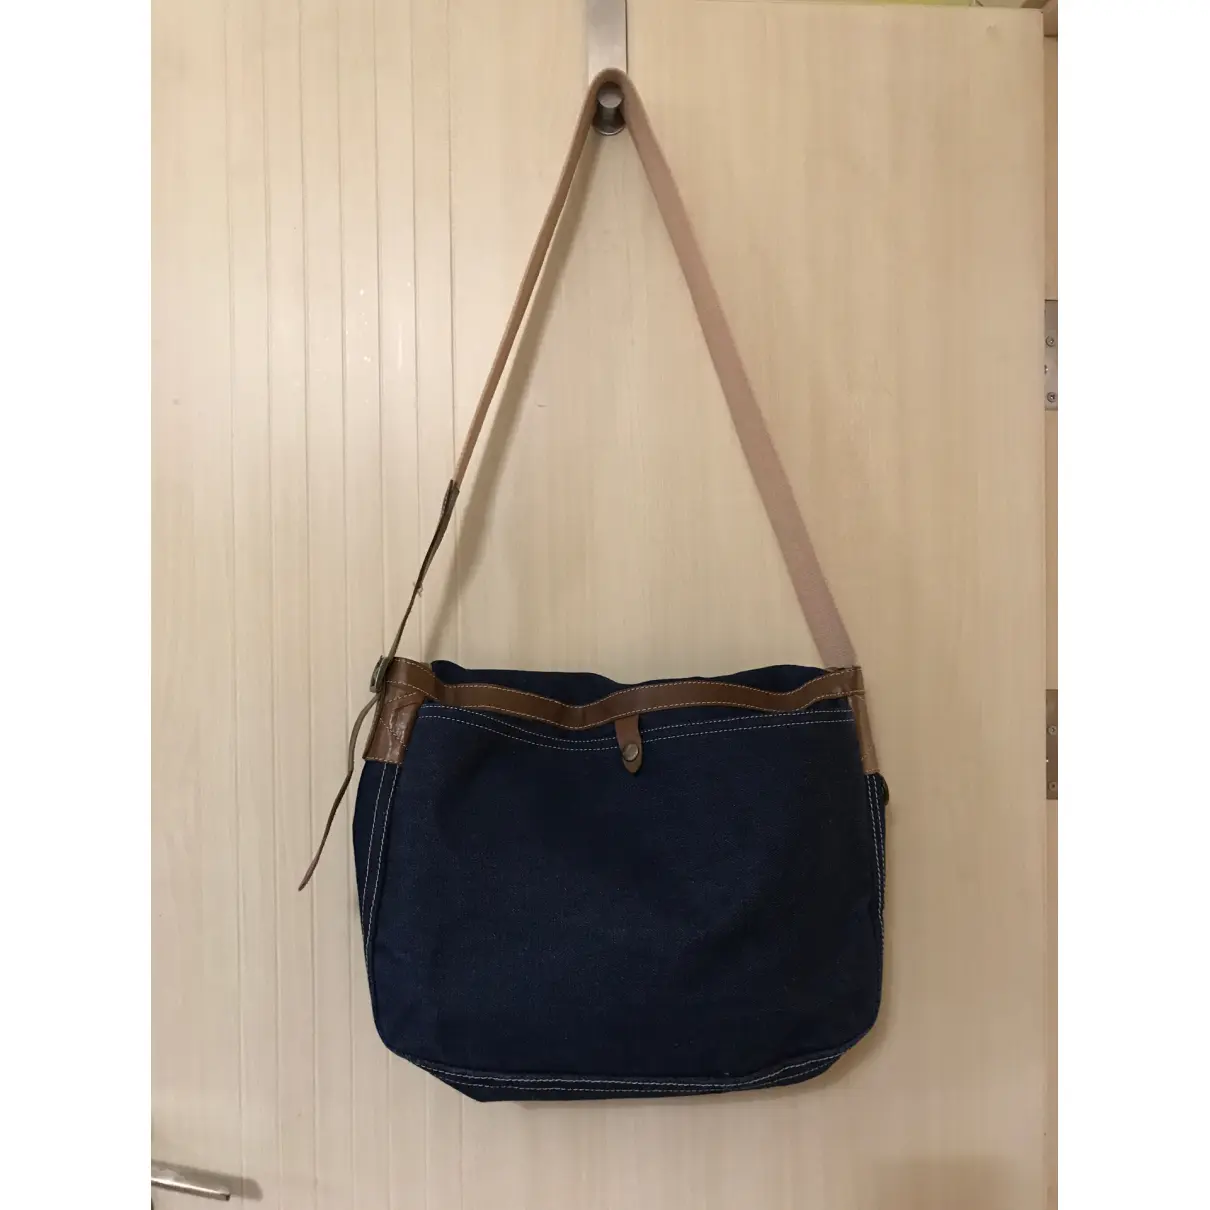 Buy Armand Ventilo Cloth handbag online